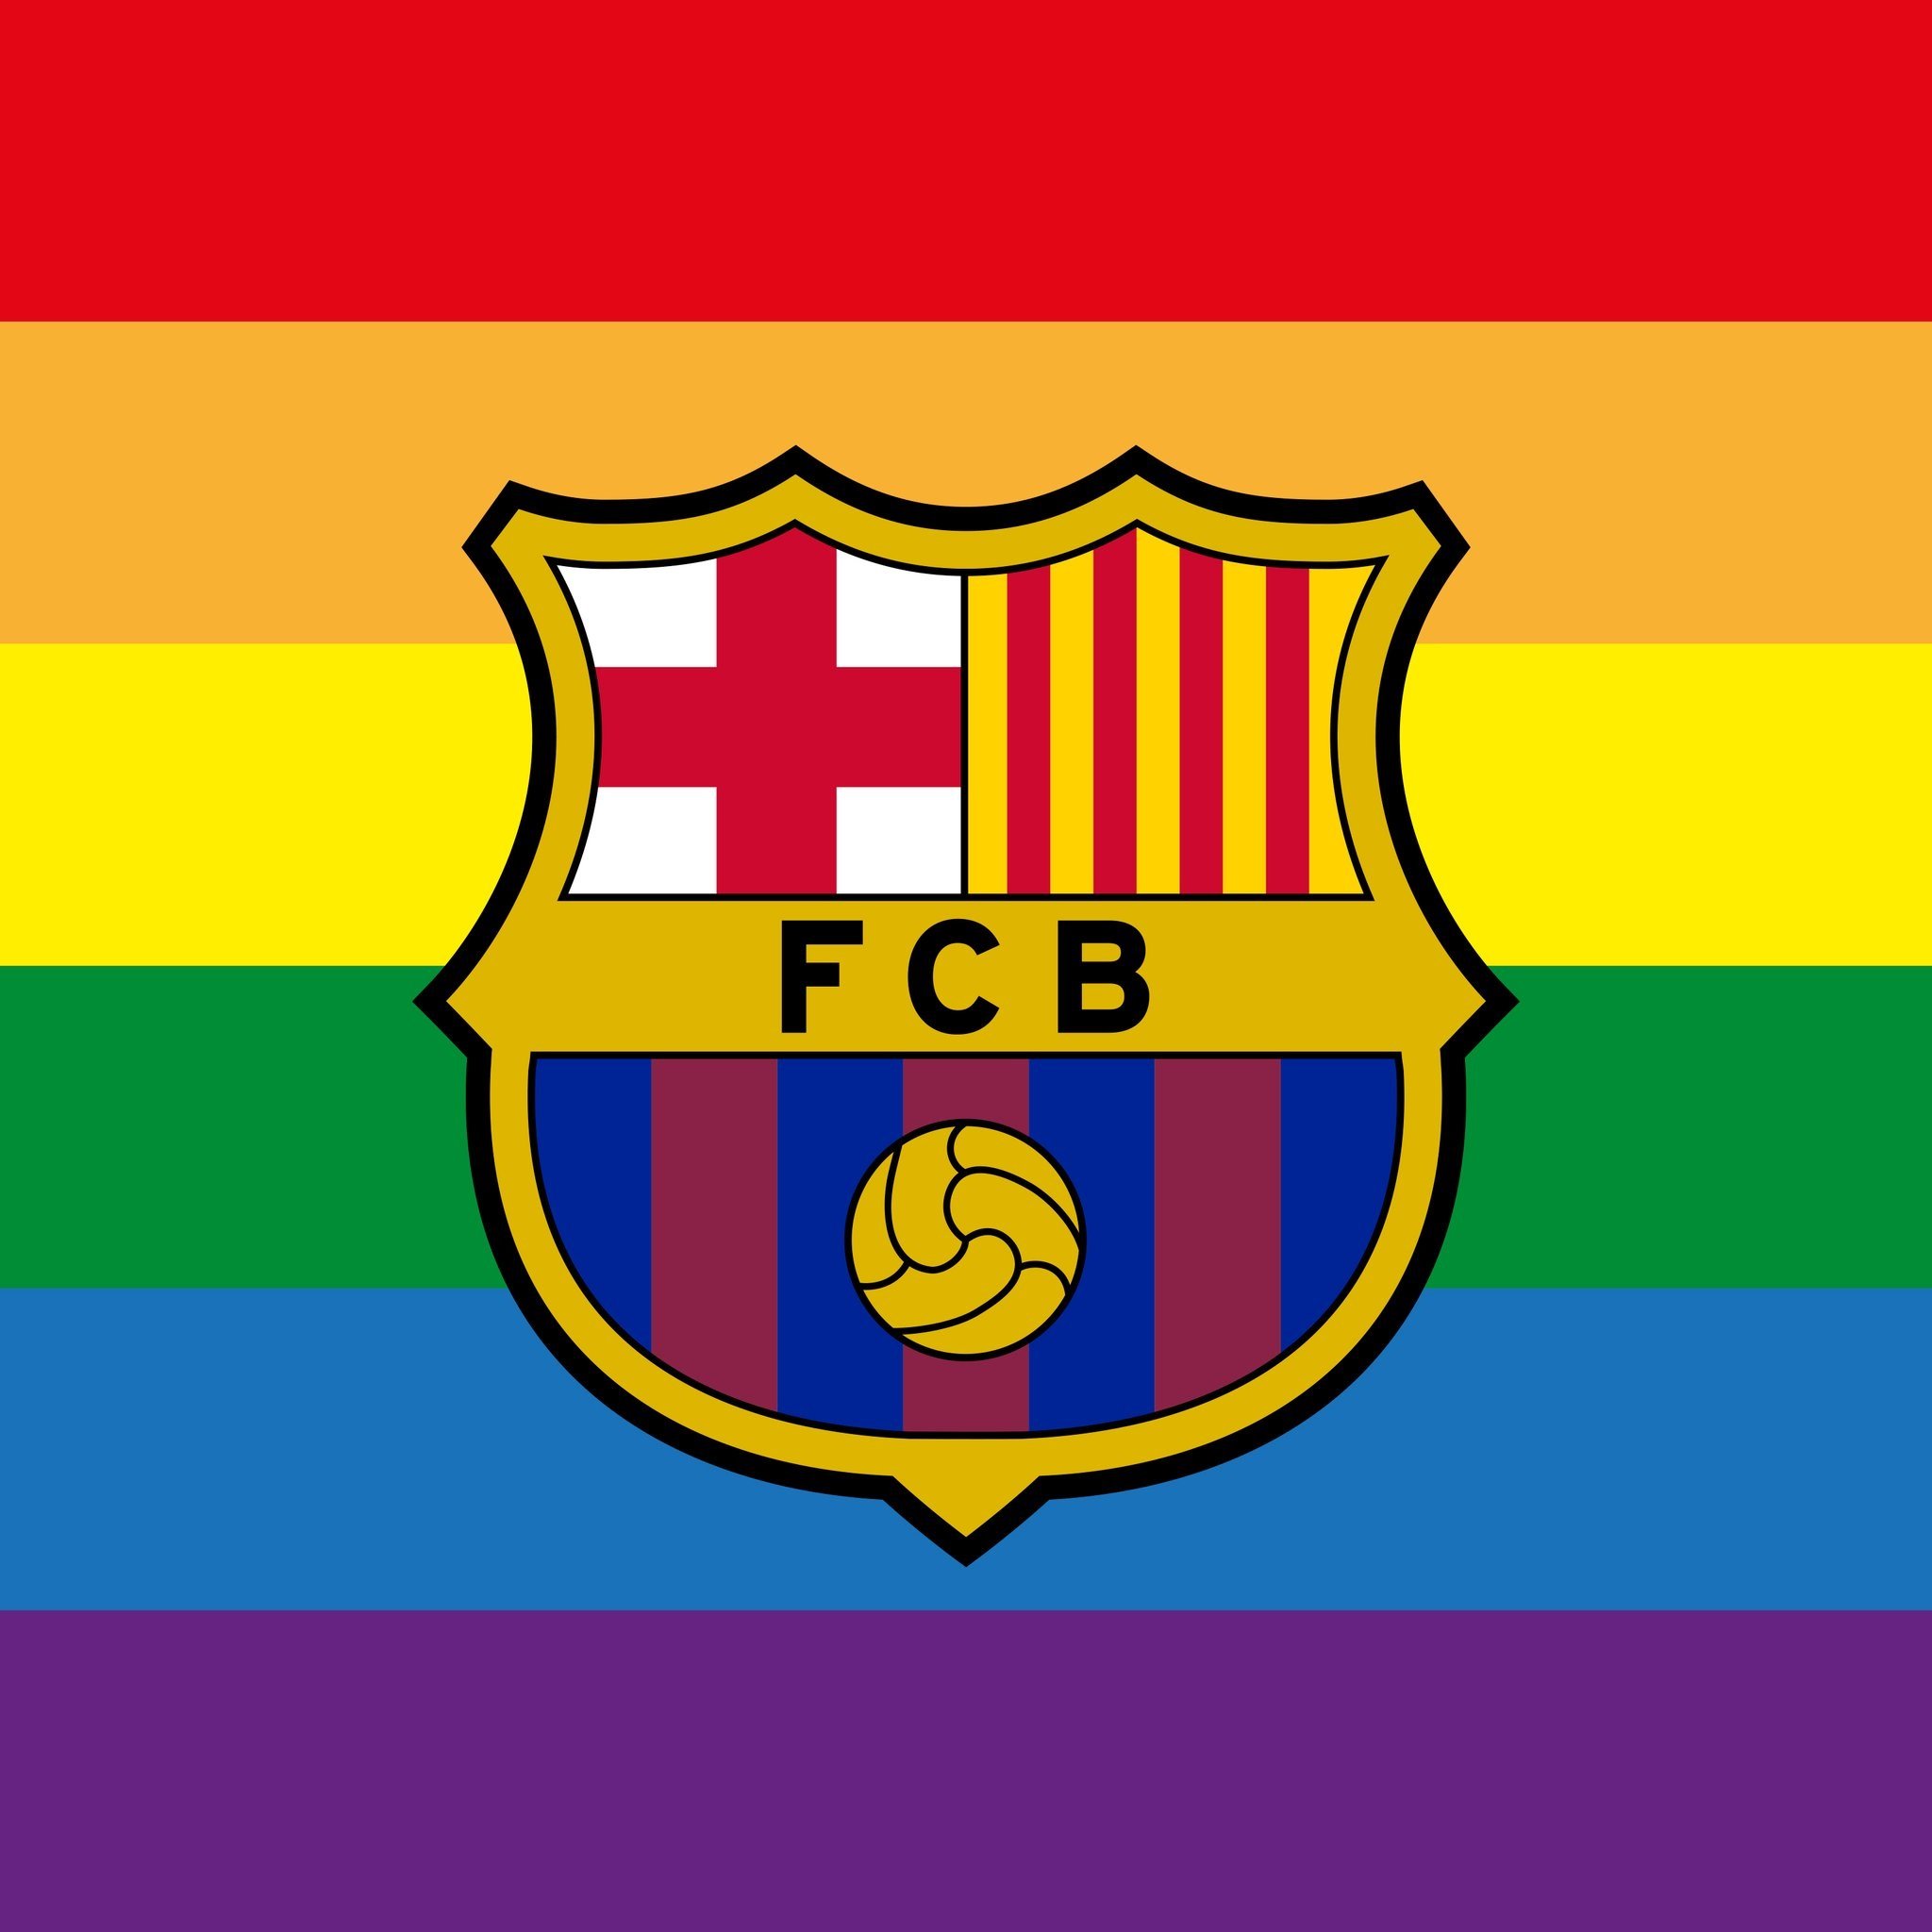 El Barça i Piqué, contra la UEFA: "orgull i respecte" per al col·lectiu LGTBI